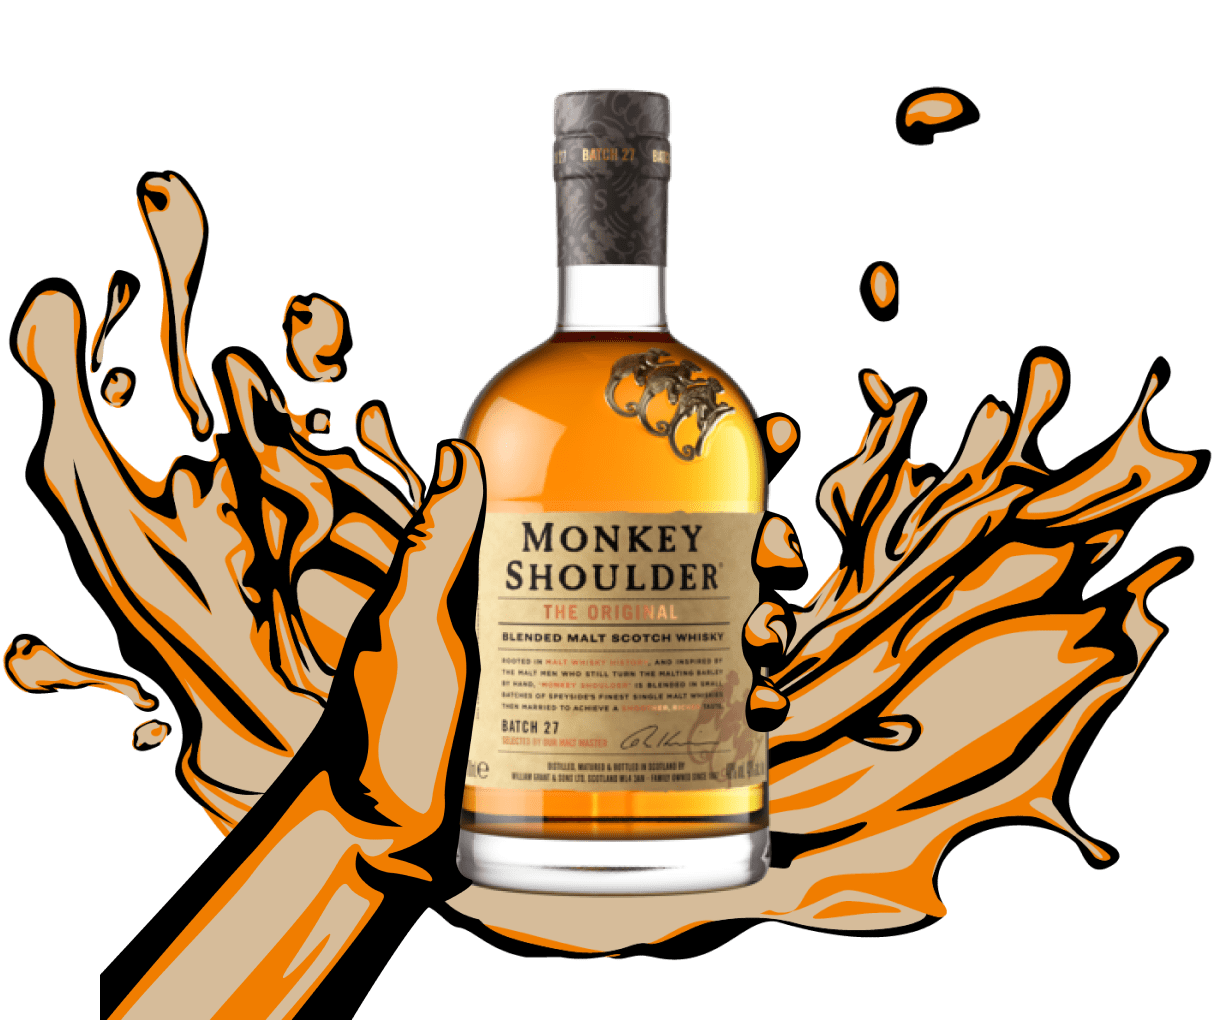 Malt Shoulder Original Monkey Blended Monkey Whisky | Scotch Shoulder Speyside